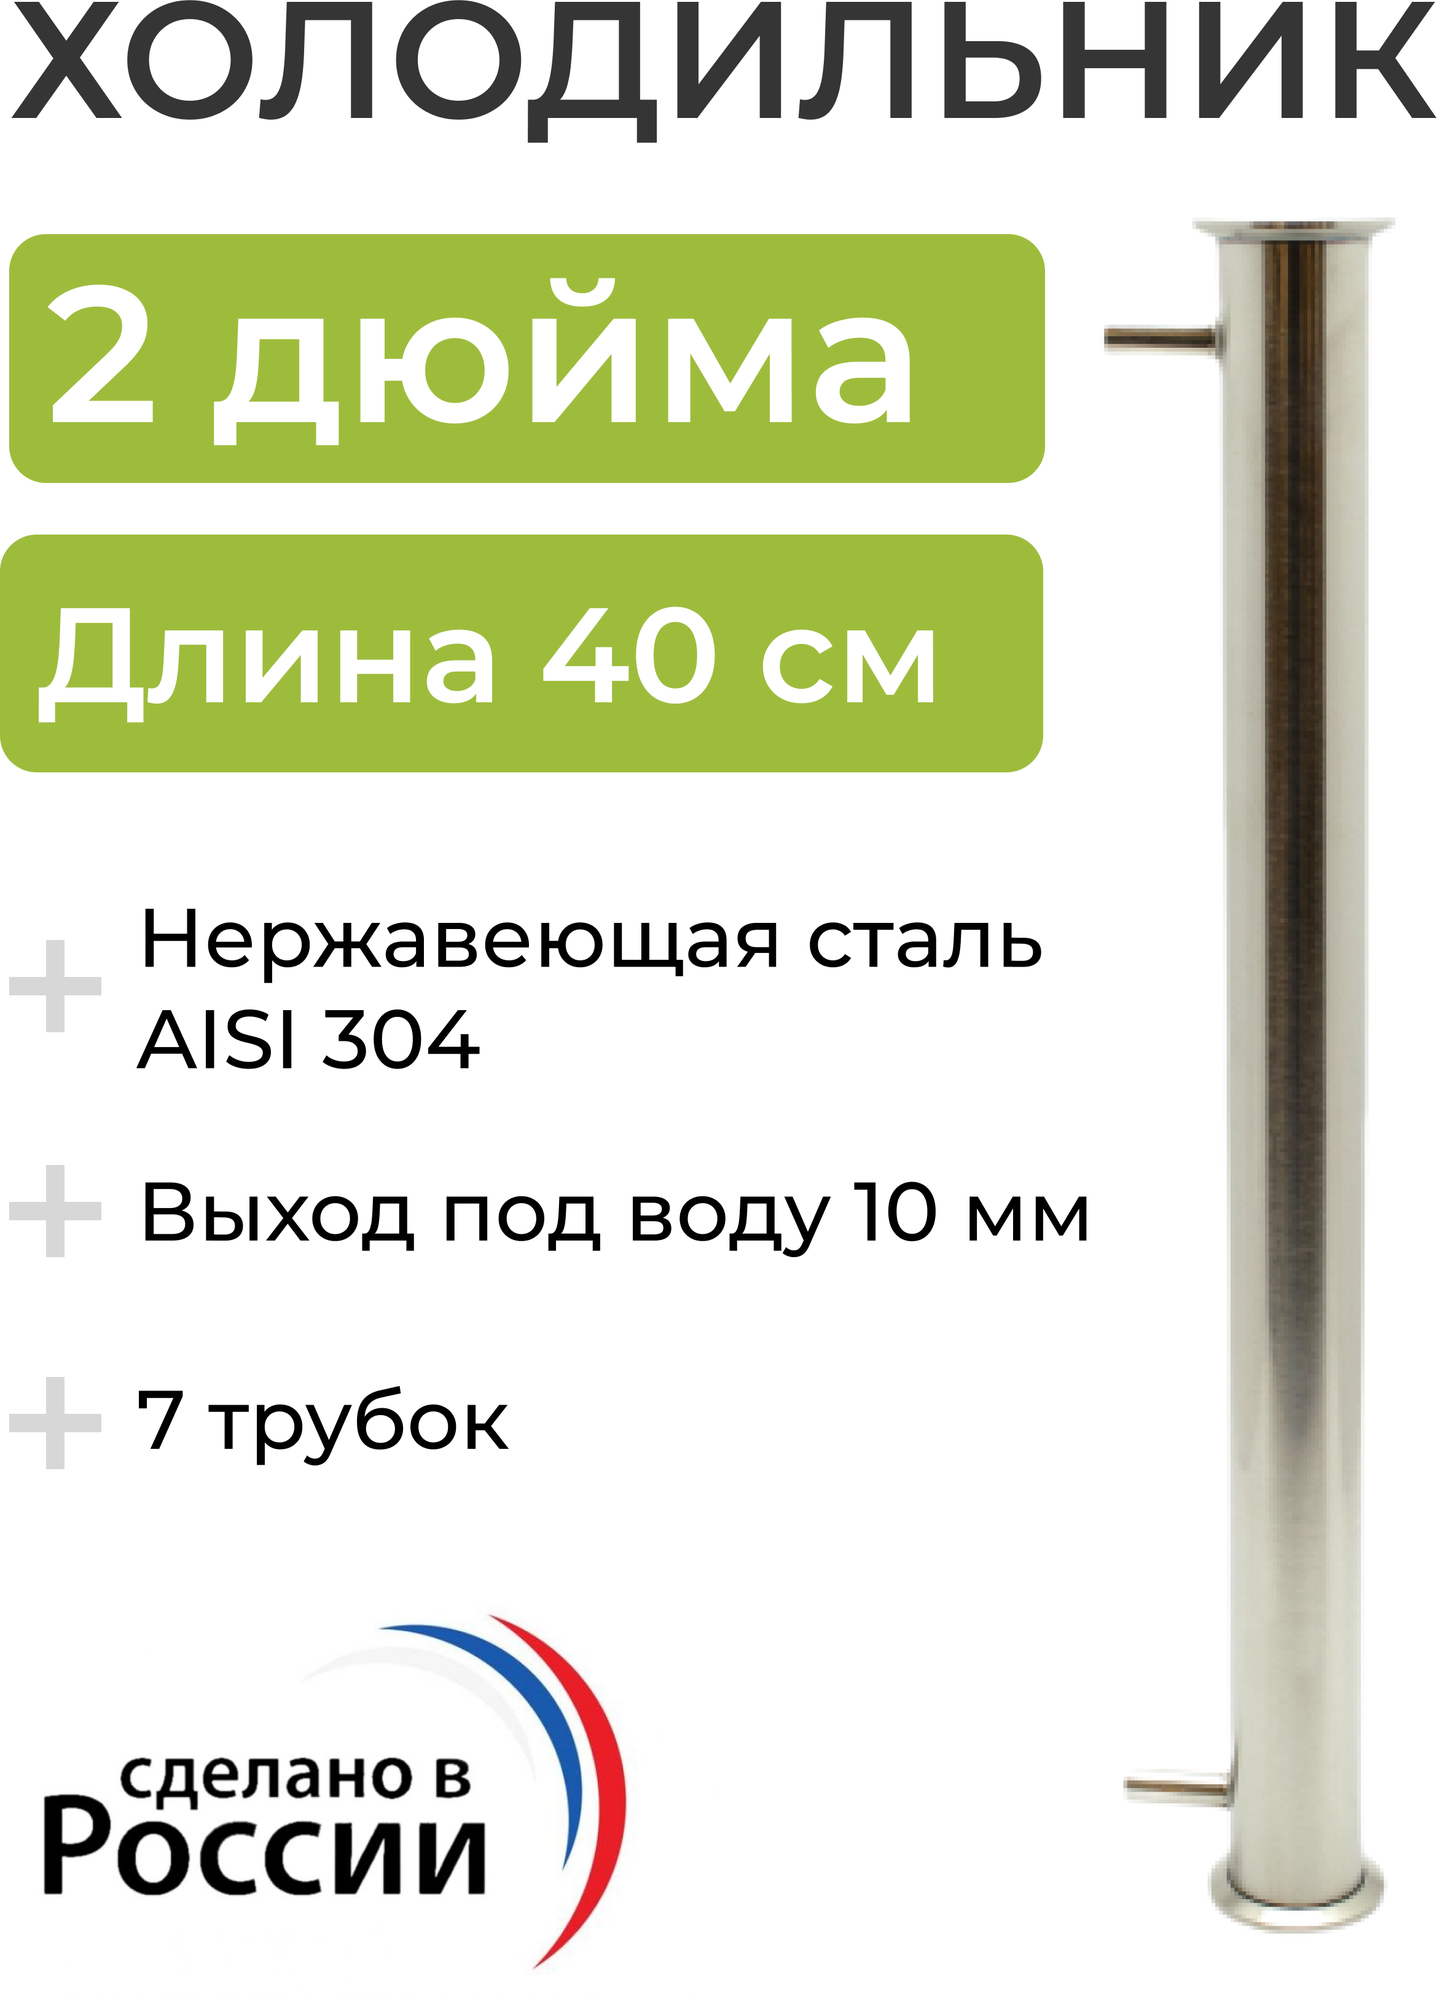 Холодильник (дефлегматор) под кламп 2 дюйма, 40 см (7 трубок, 12 мм) выход под воду 10 мм